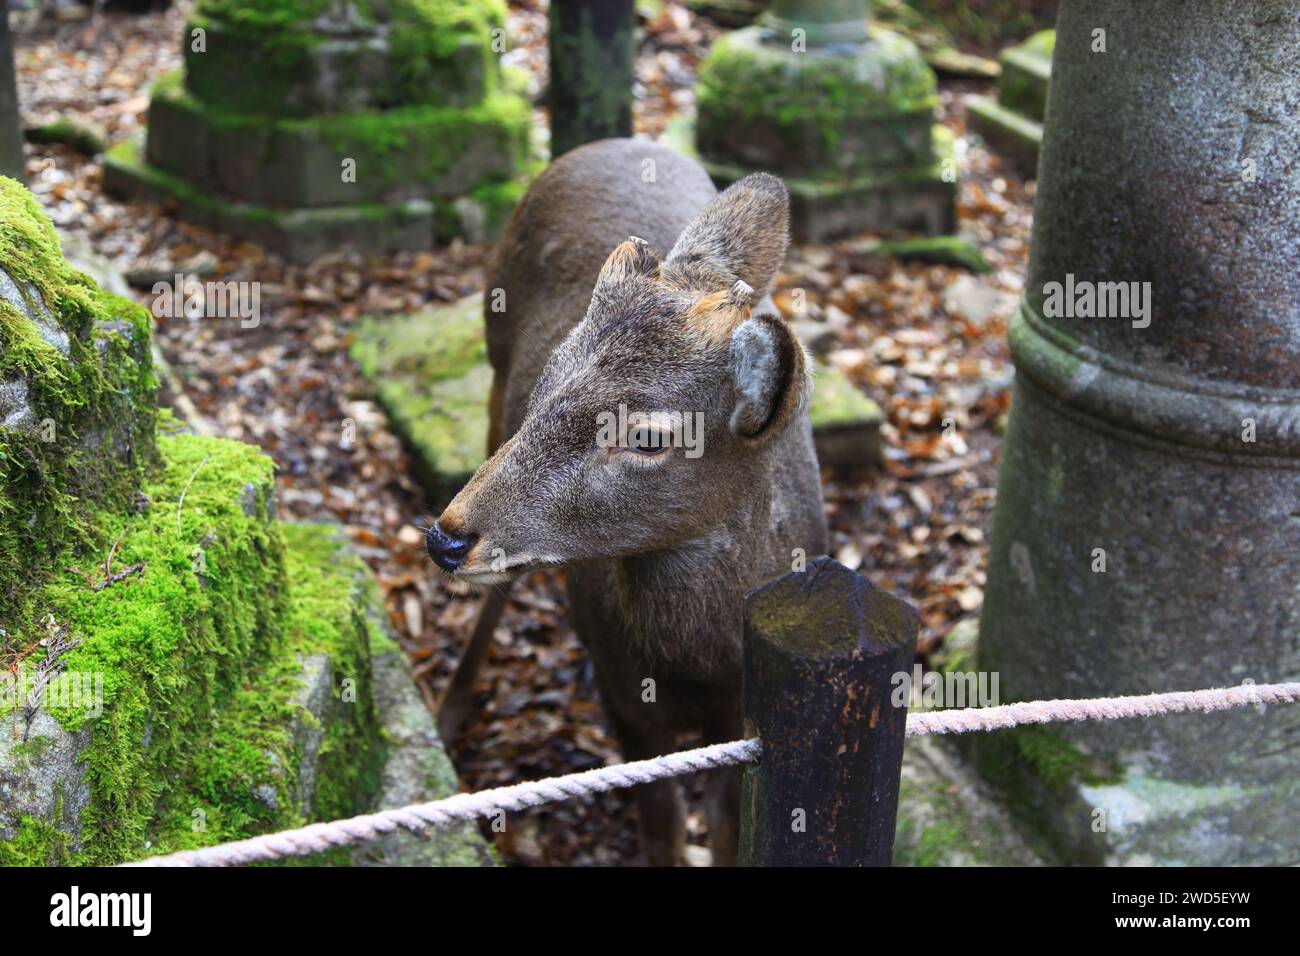 A deer bside stone lanterns at Kasuga Taisha or Kasuga Grand Shrine in Nara, Japan. Stock Photo